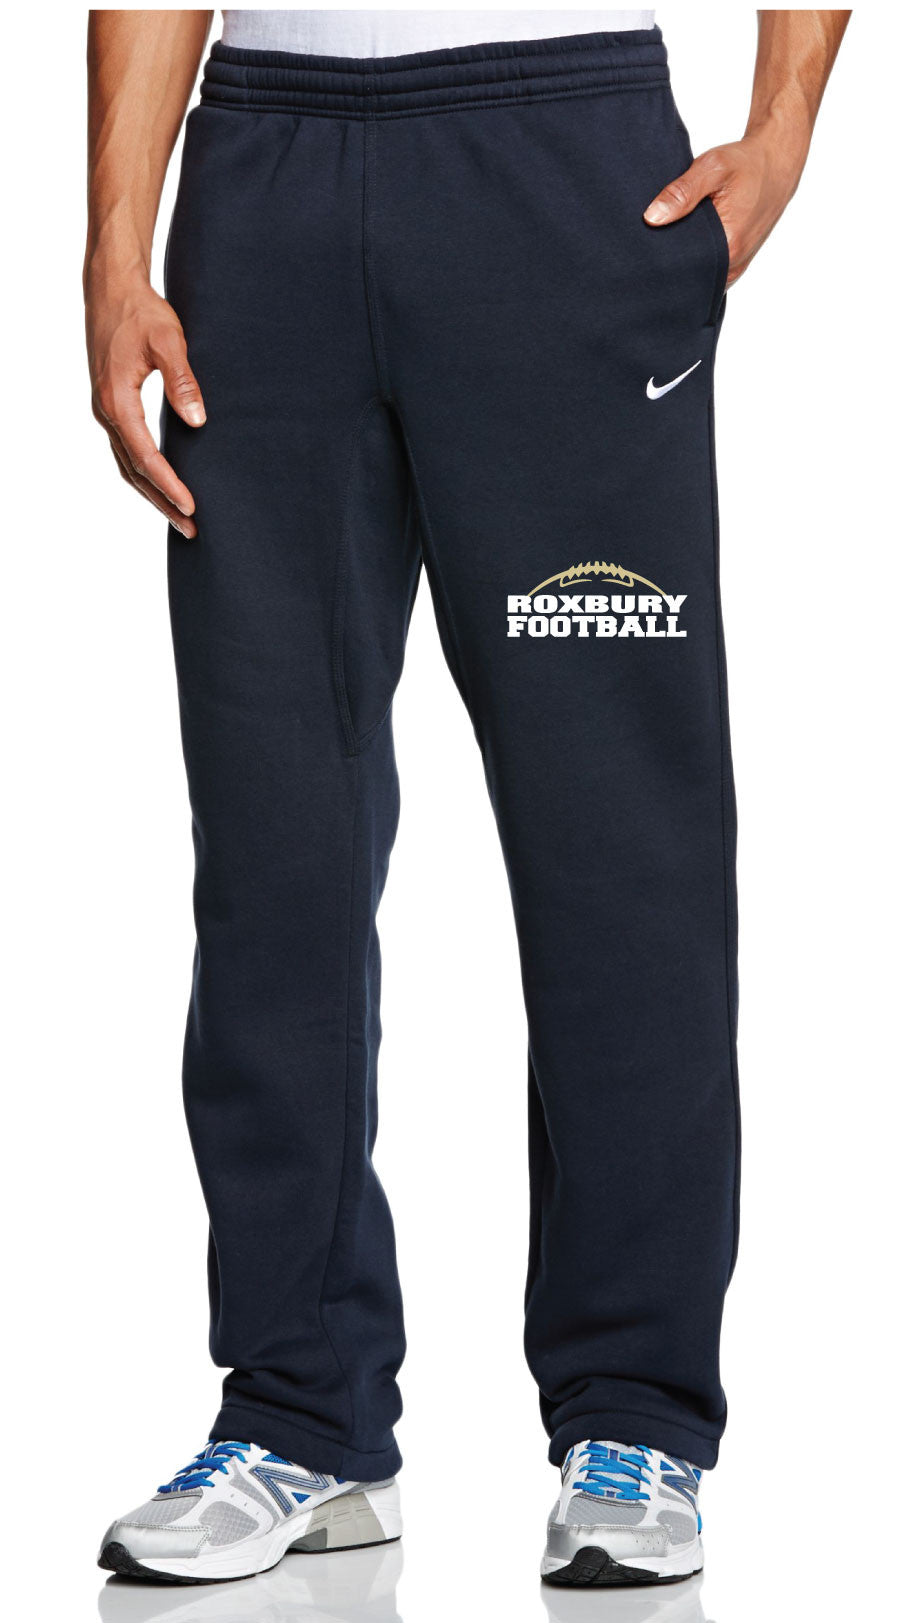 Roxbury Football 2017 Nike Fleece Sweatpants Pants - 5KounT